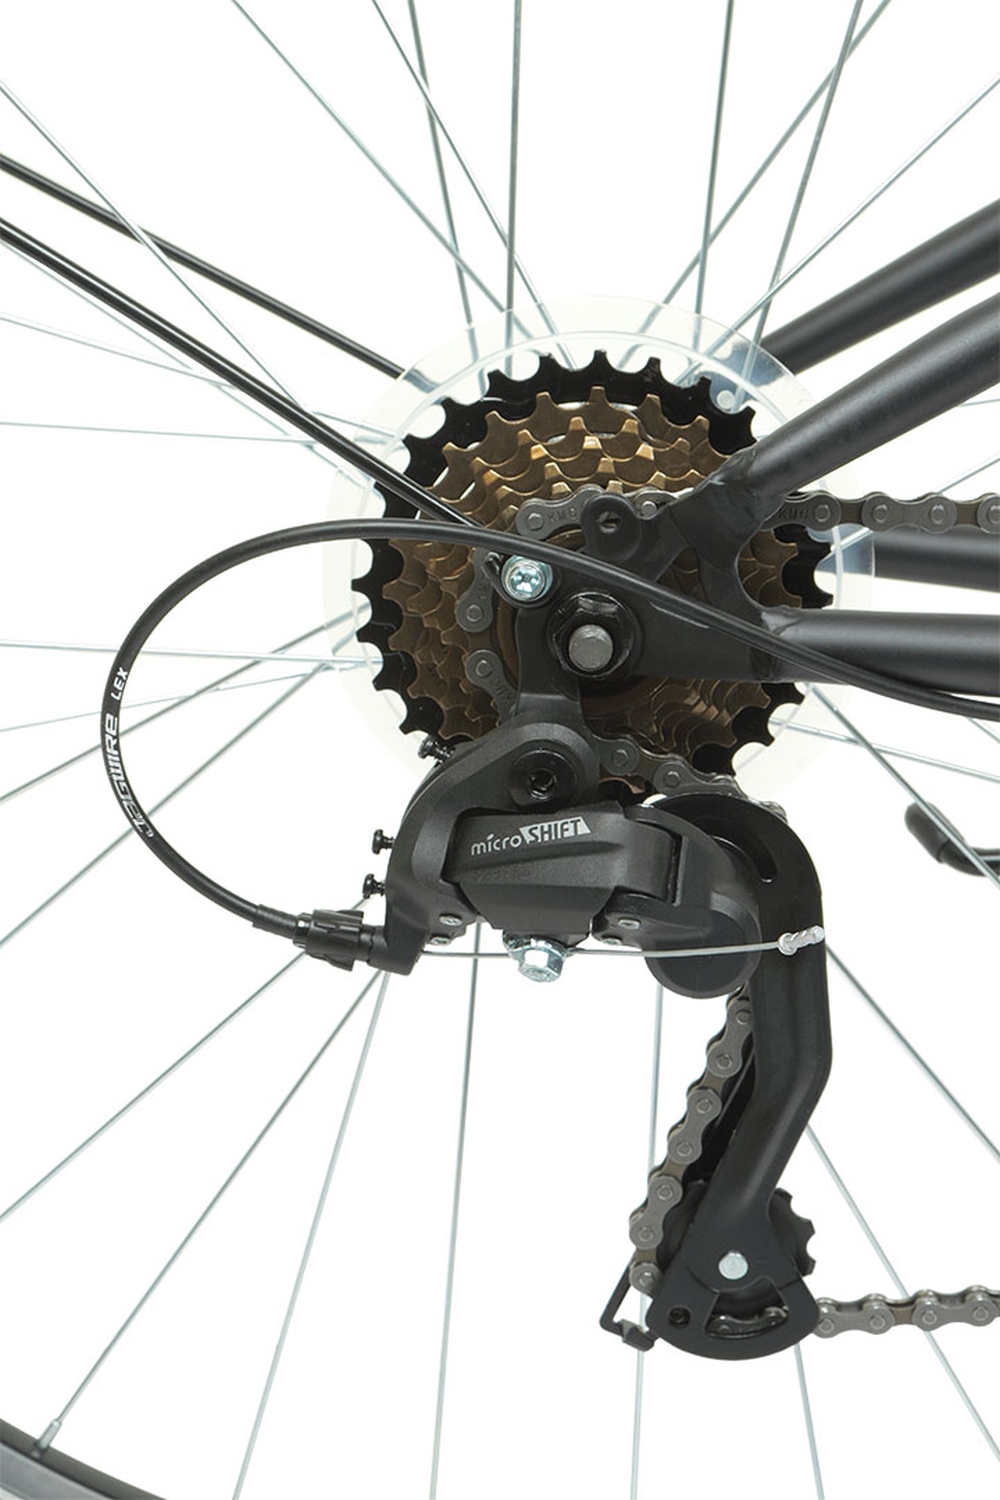 Дорожный велосипед Forward Parma 28, год 2022, цвет Серебристый-Черный, ростовка 19